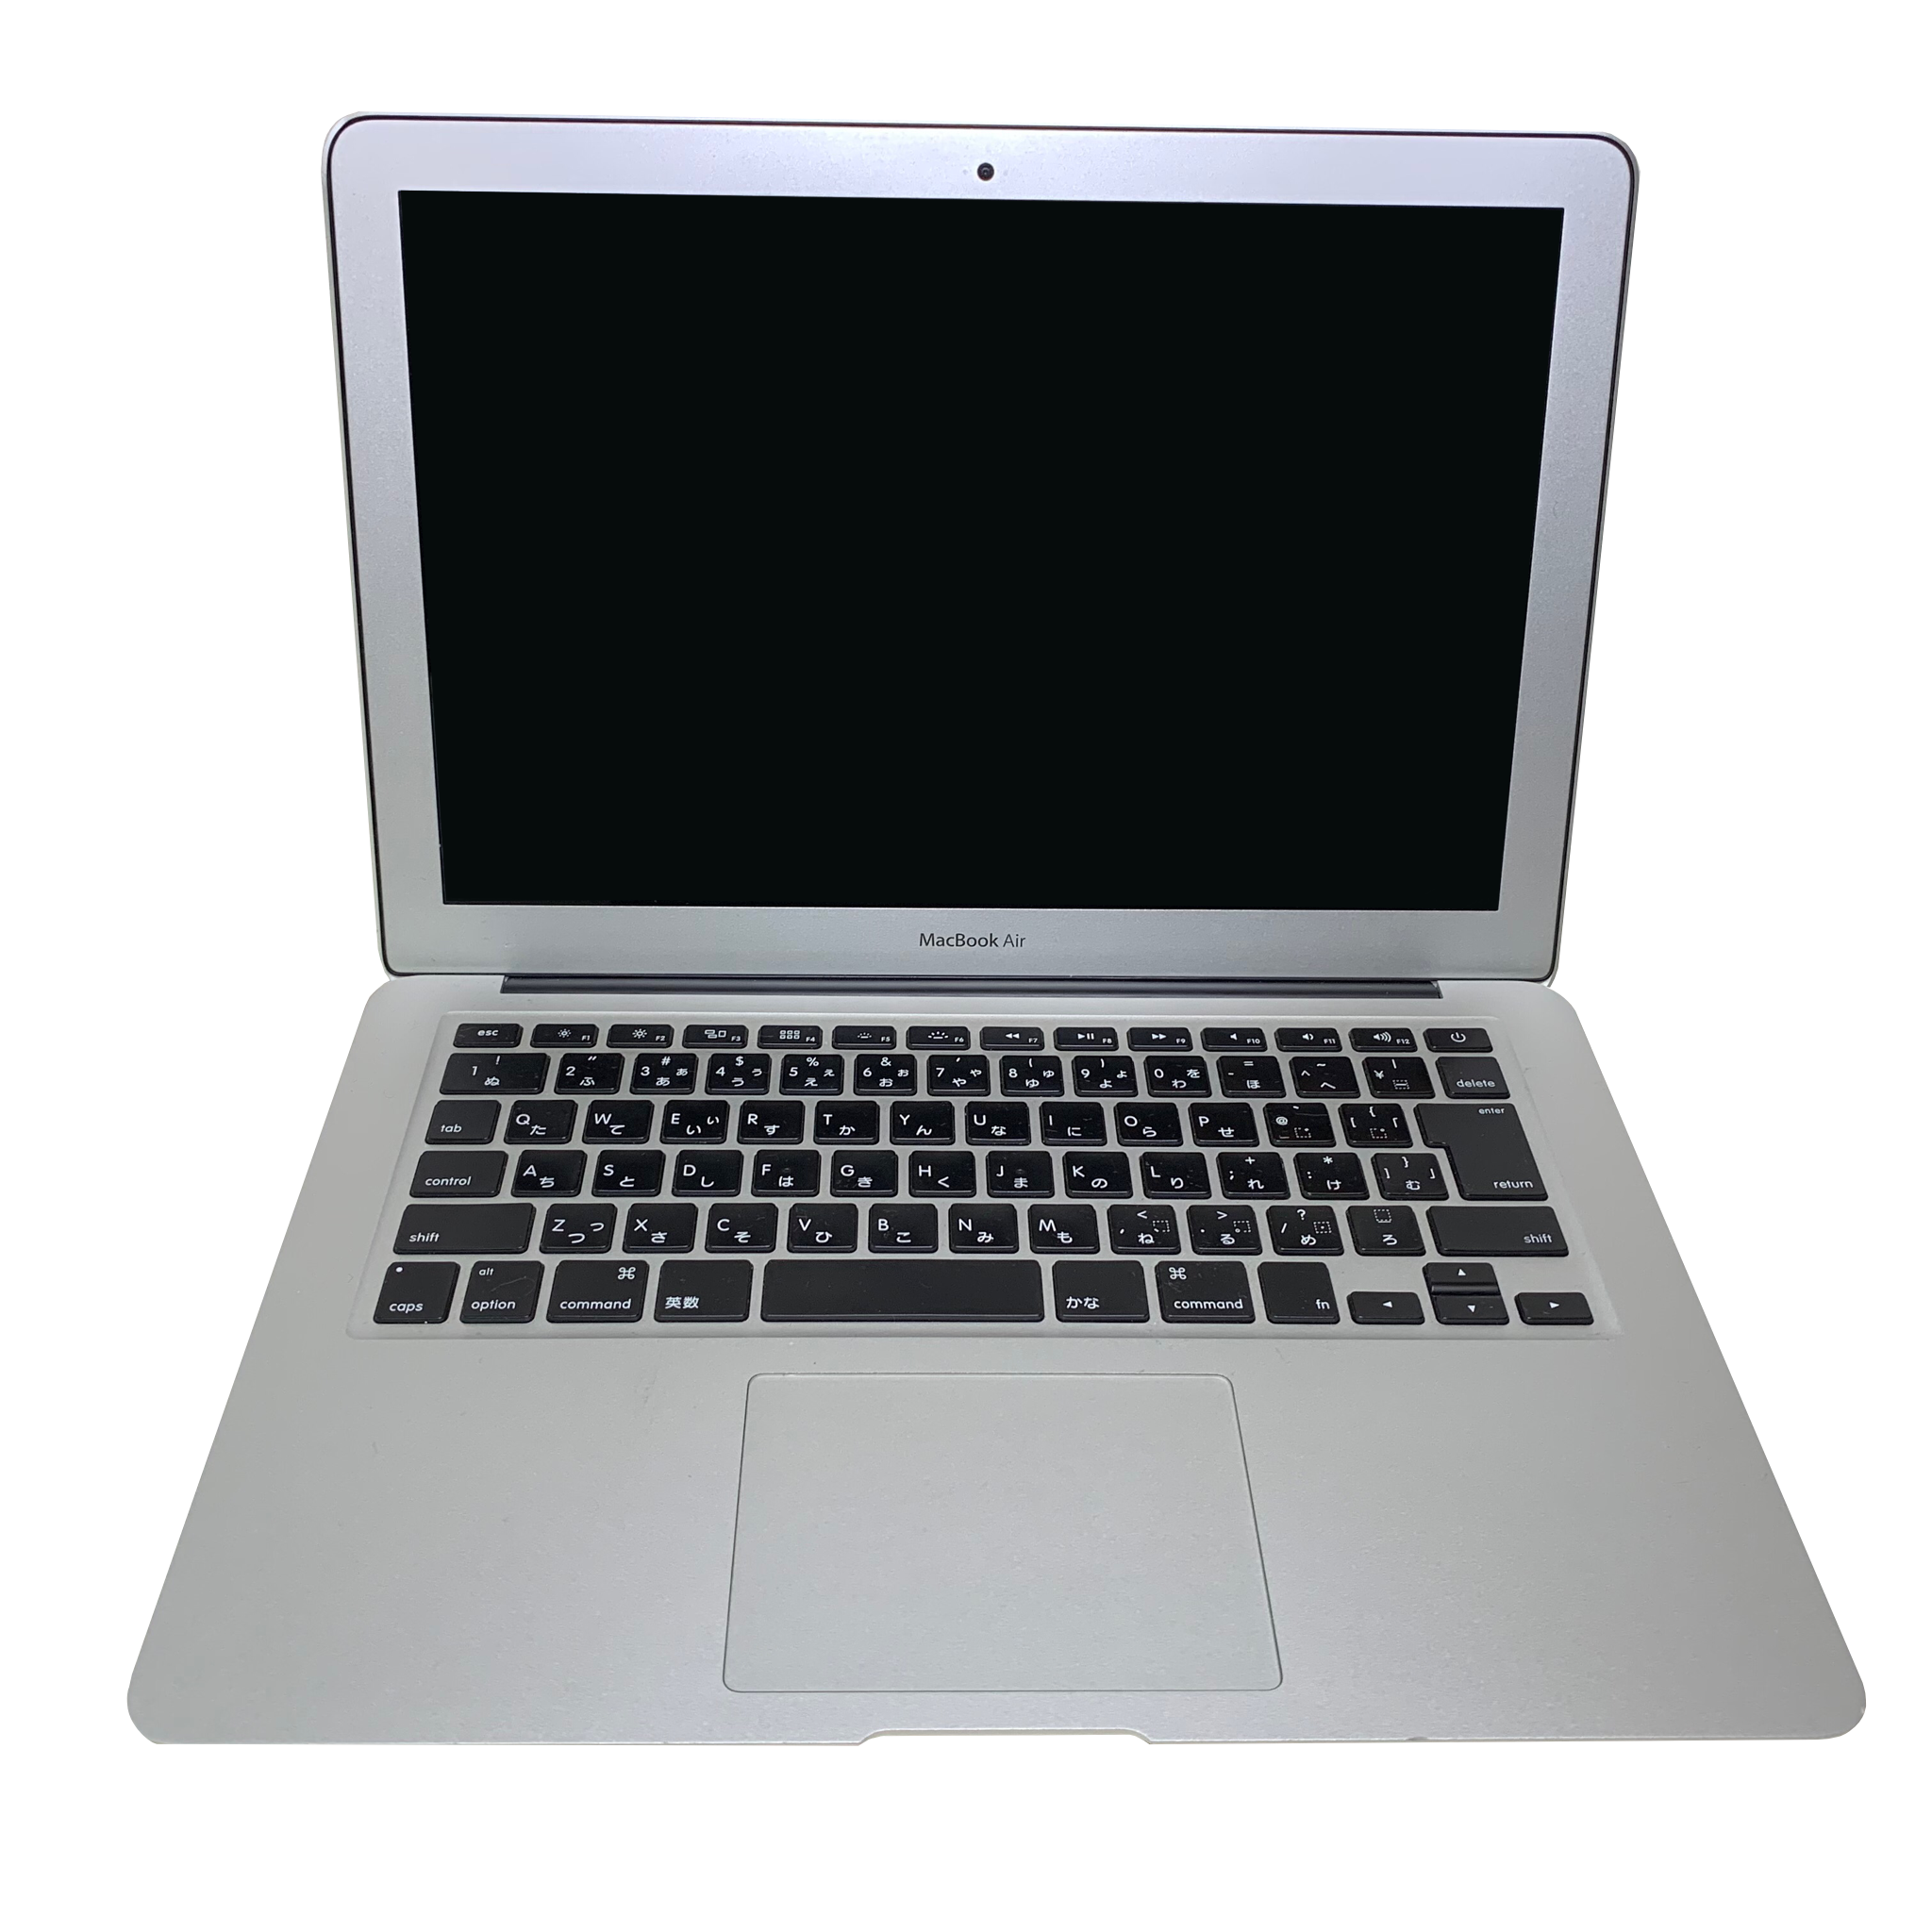 MacBook Air 2011 Windowsダウンロード済みノートPC